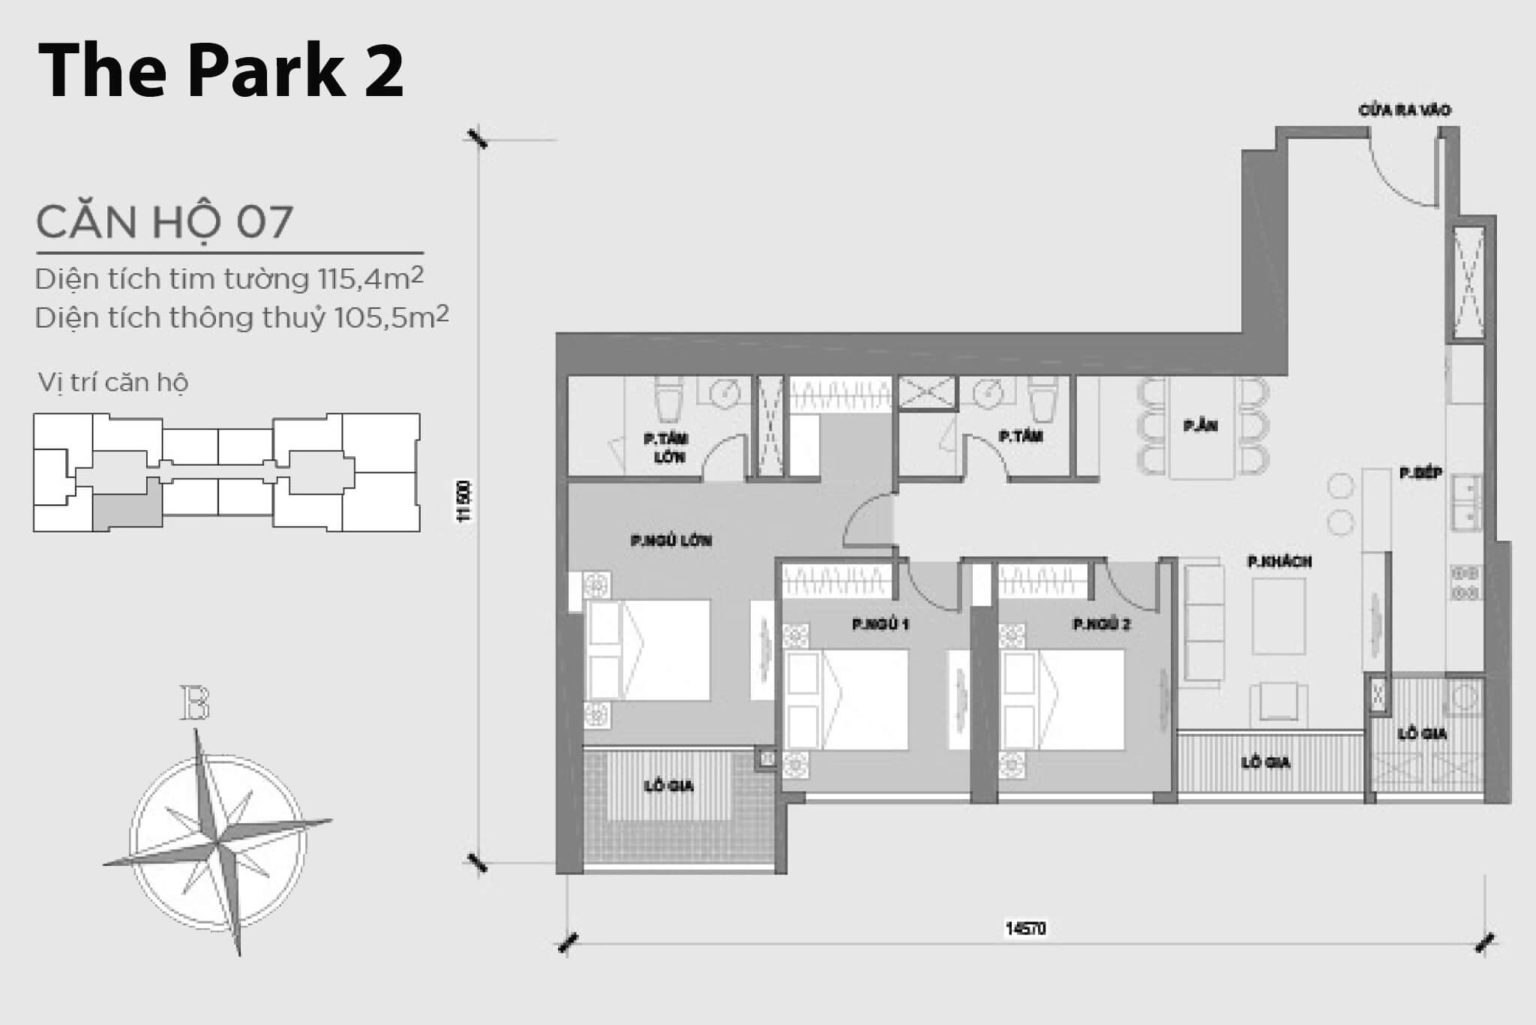 202301/02/09/171812-mat-bang-layout-park-2-can-ho-07-1536x1025.jpg